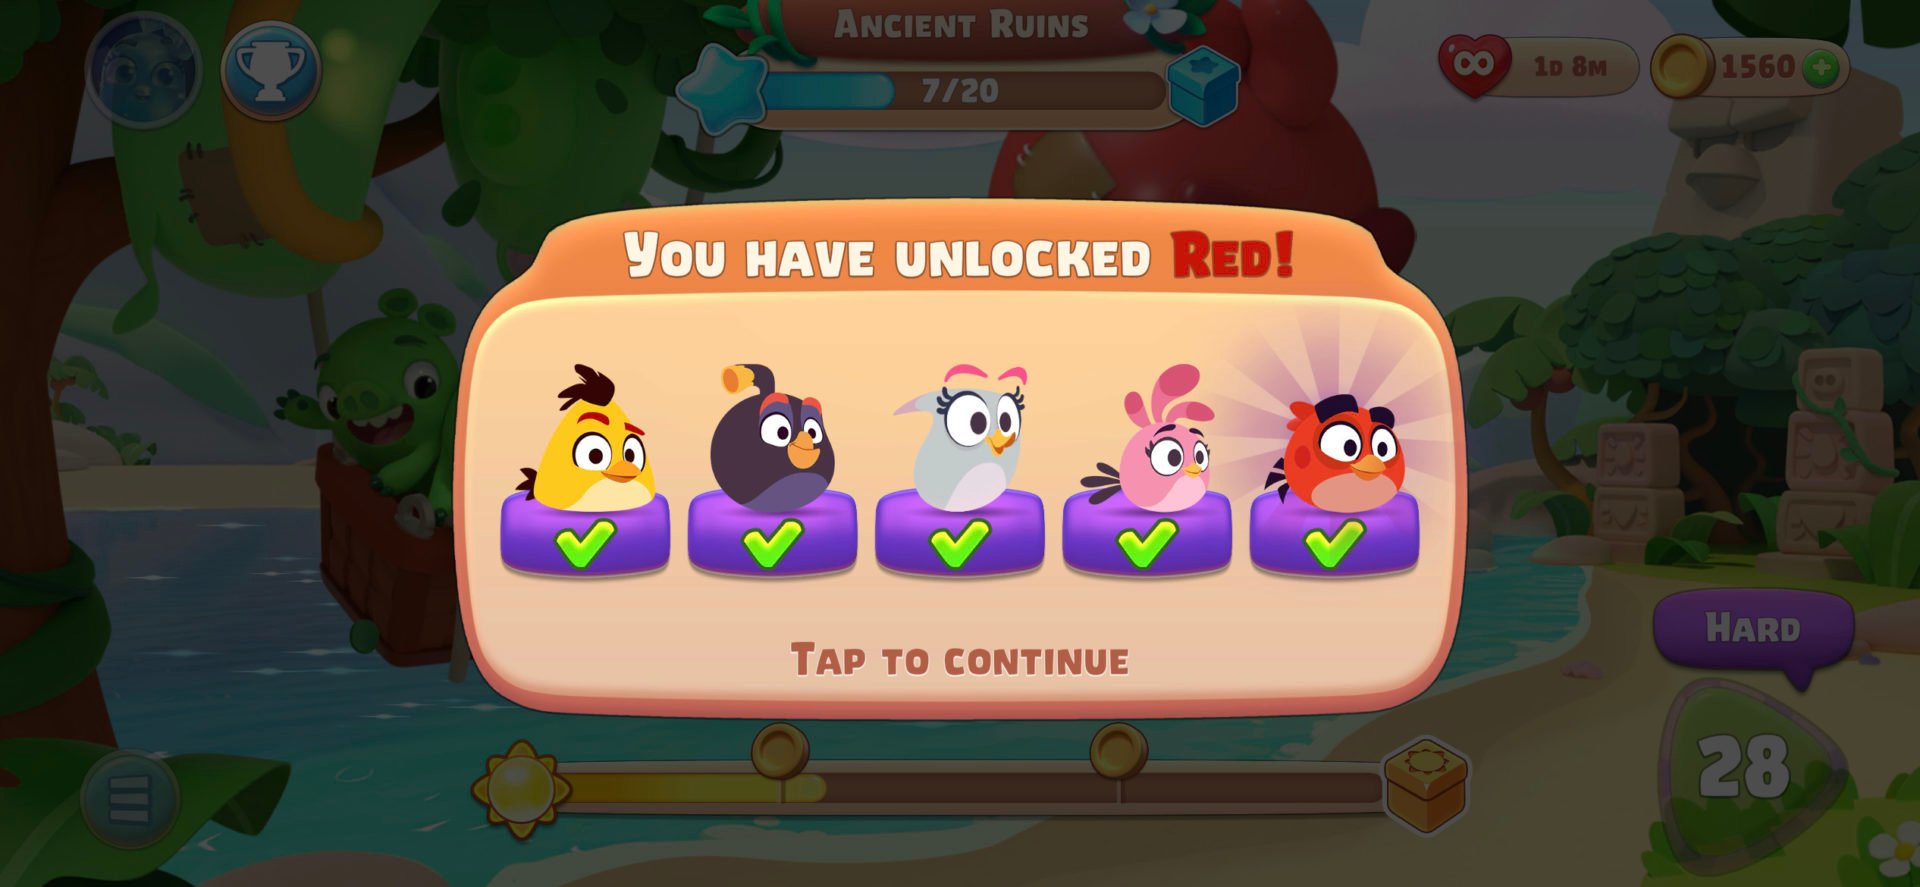 รีวิวเกม Angry Birds Journey การกลับมาของปักษาพิโรธ มีอะไรแตกต่างจากเดิมบ้าง มาดู